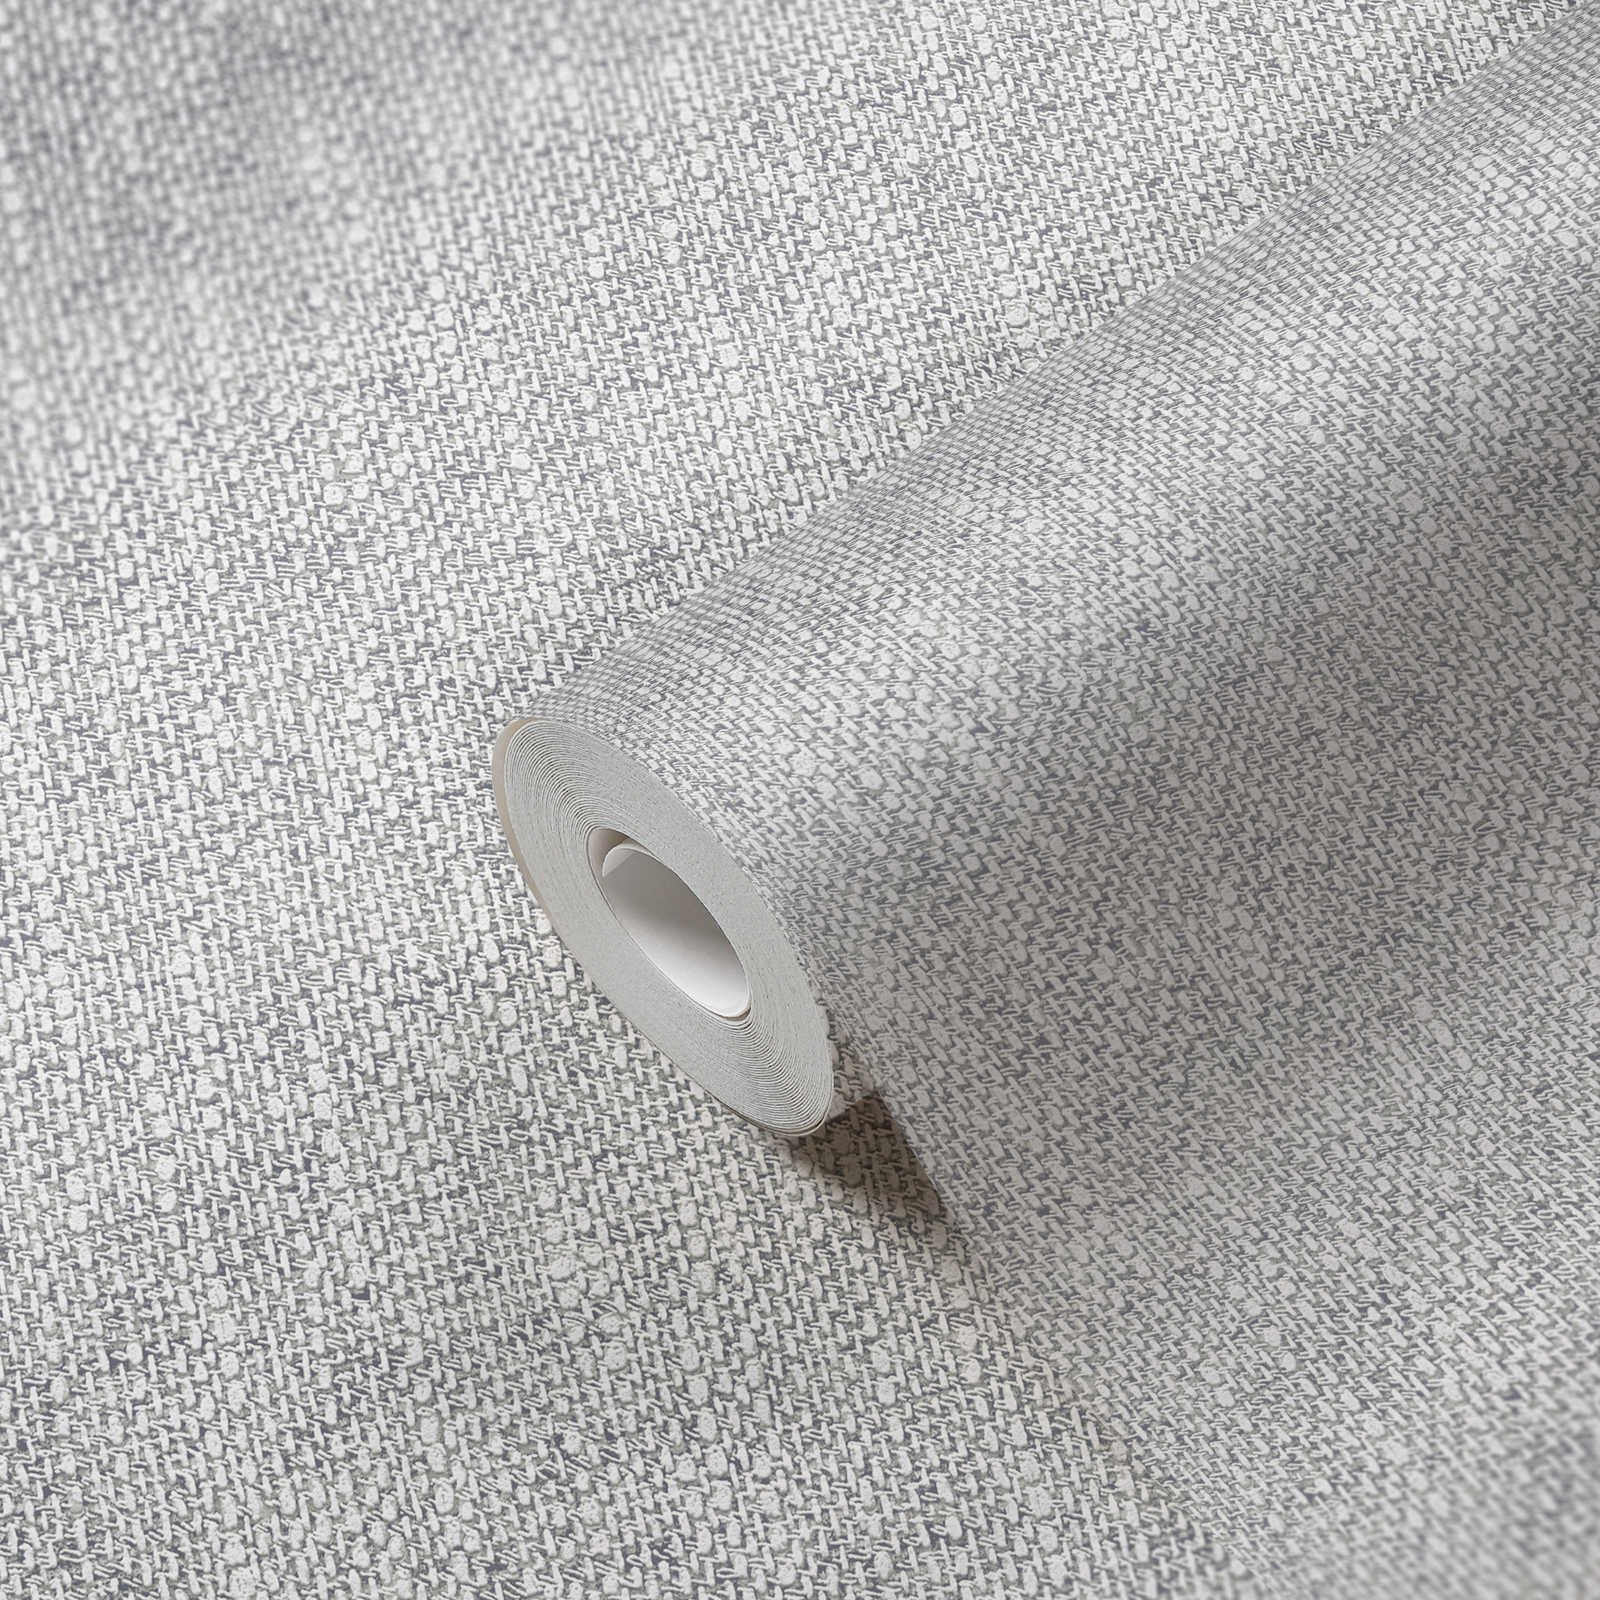             Papel pintado no tejido con aspecto de tela realista - gris, blanco
        